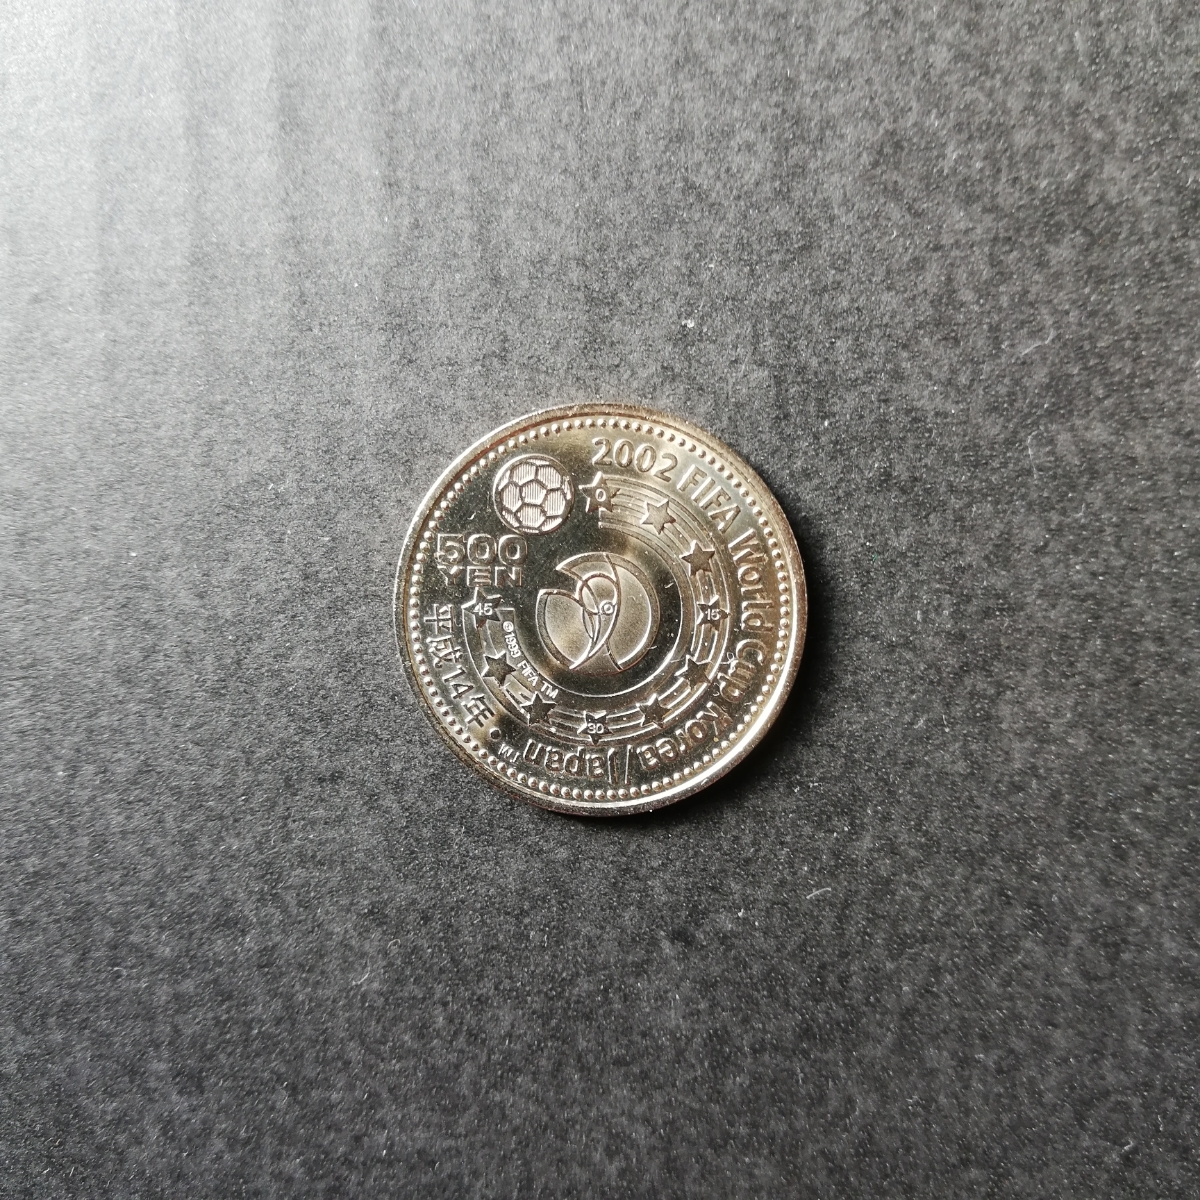 日韓ワールドカップ500円記念硬貨の値段と価格推移は 9件の売買情報を集計した日韓ワールドカップ500円記念硬貨の価格や価値の推移データを公開